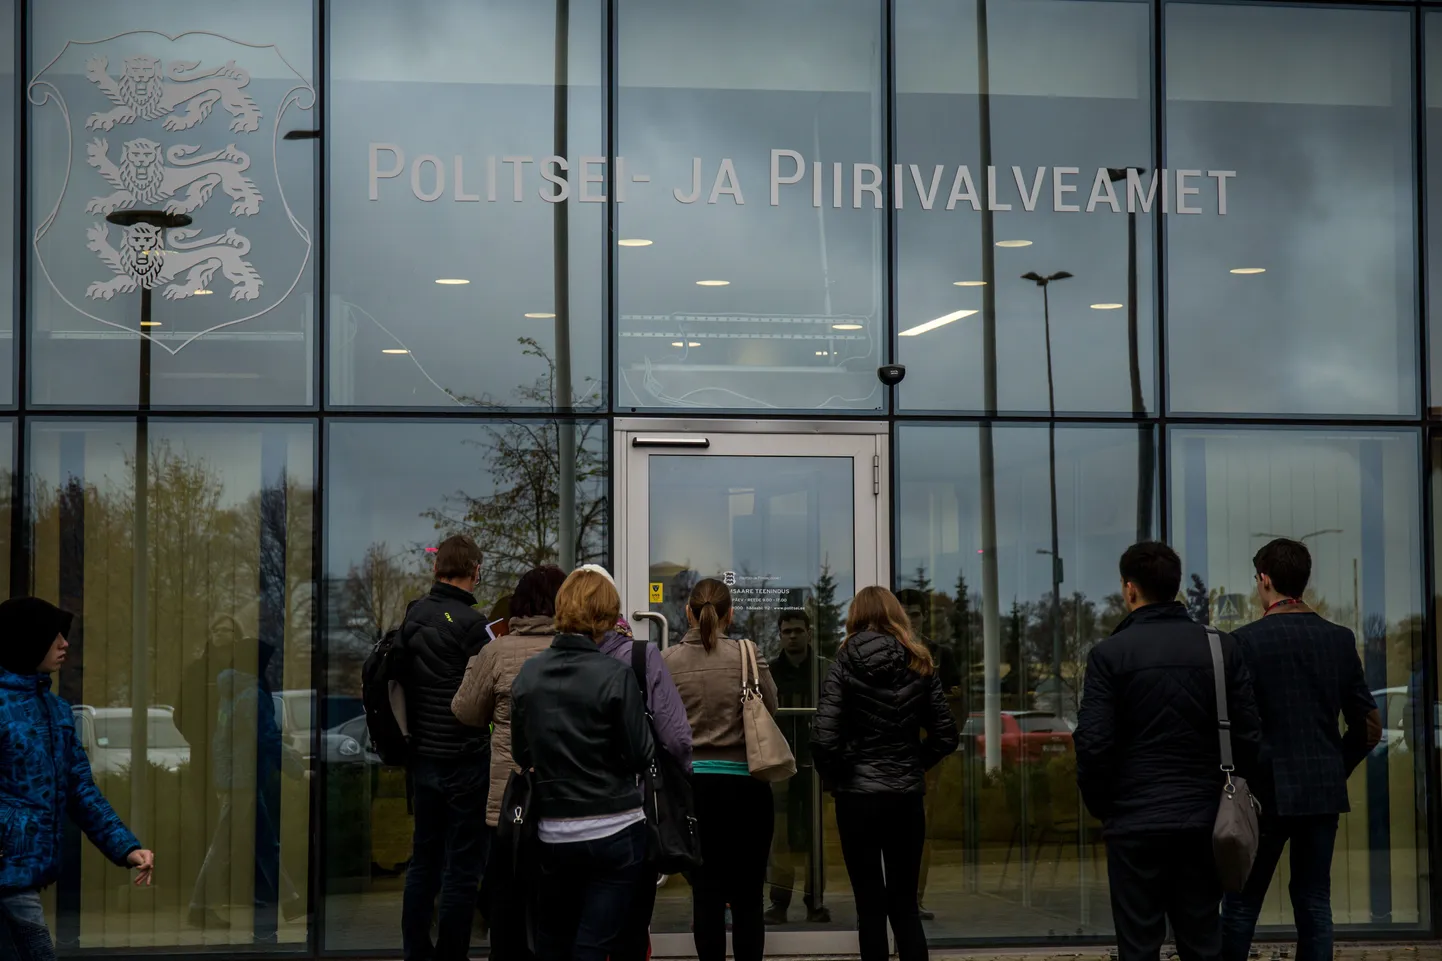 Департамент полиции и погранохраны ежегодно выдает документы сотням тысяч временных и постоянных жителей Эстонии. Ошибки, конечно, возможны, но чаще решения специалистов все же правильны и обоснованны.